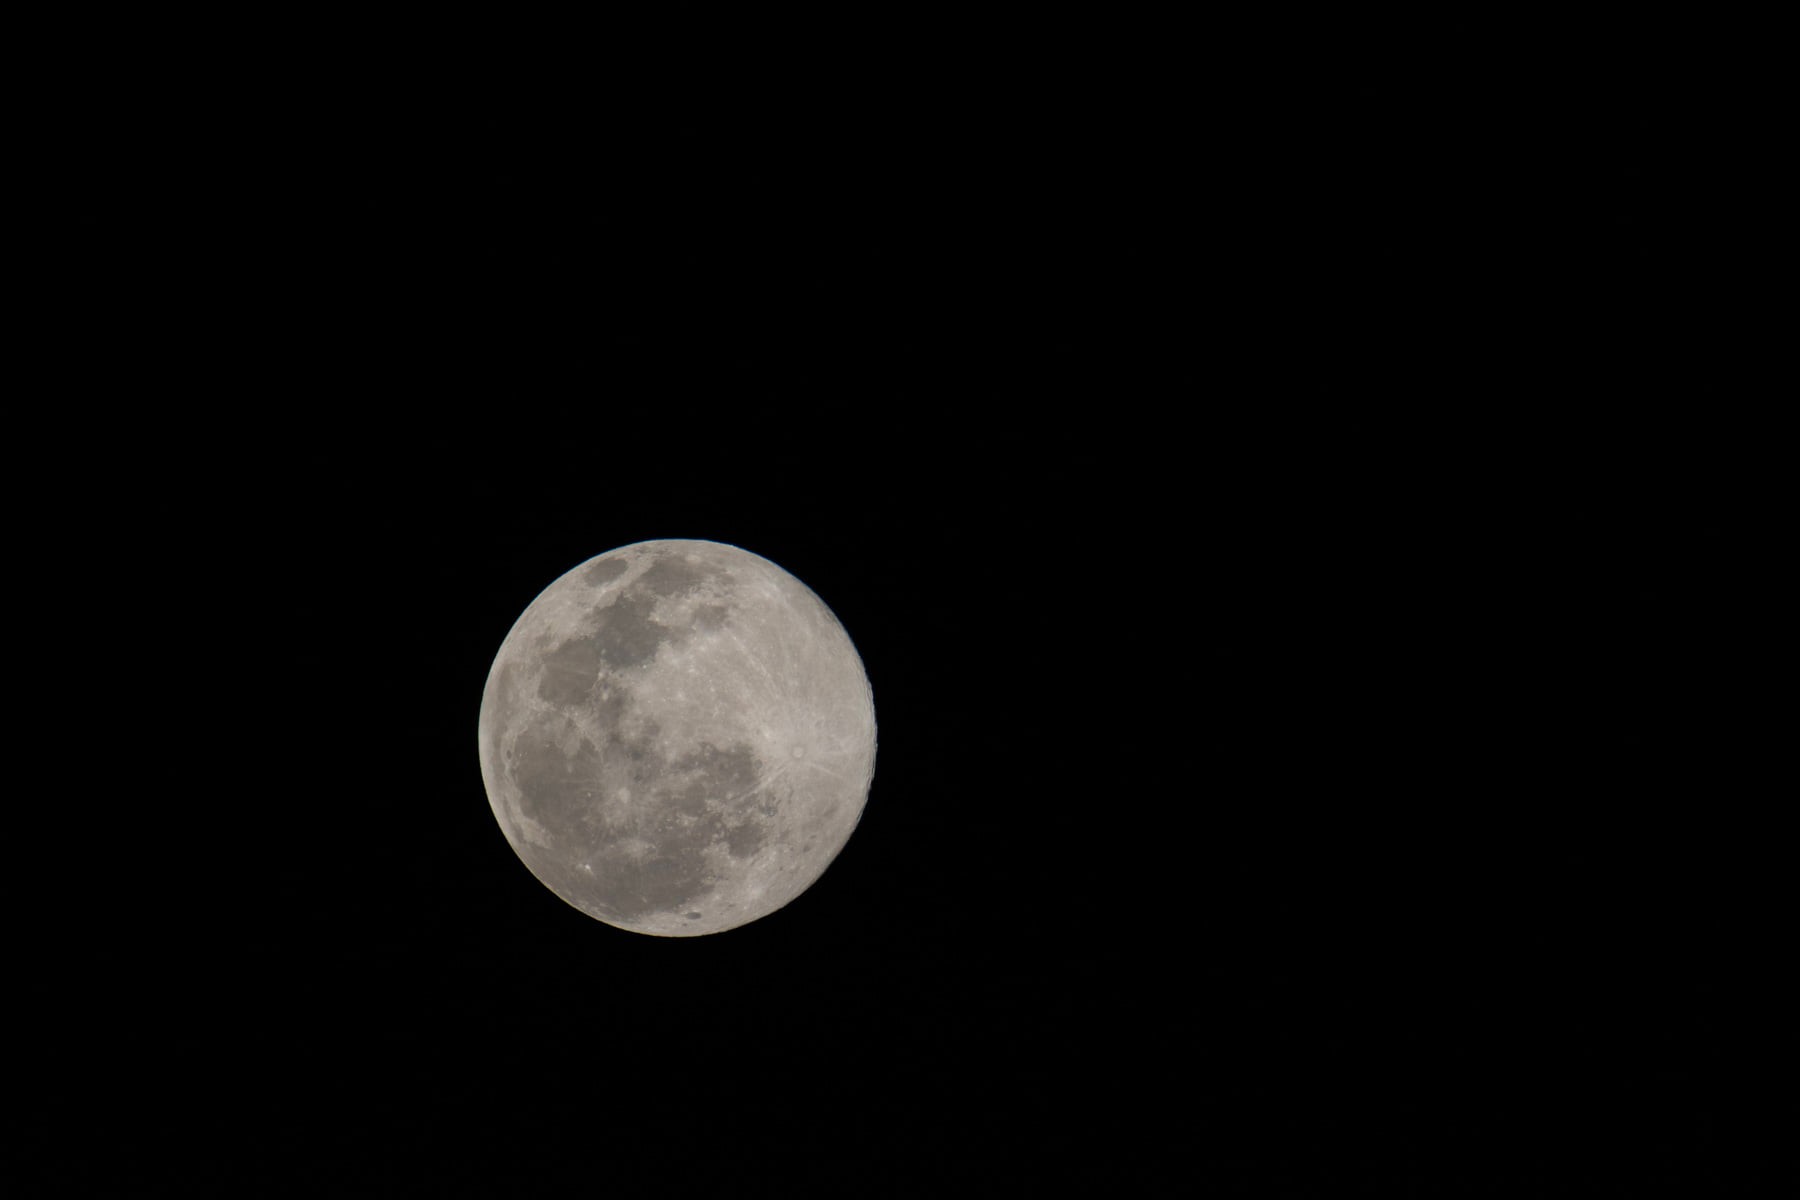 ภาพถ่ายดวงจันทร์ โดย การะเกต์ ศรีปริญญาศิลป์ 